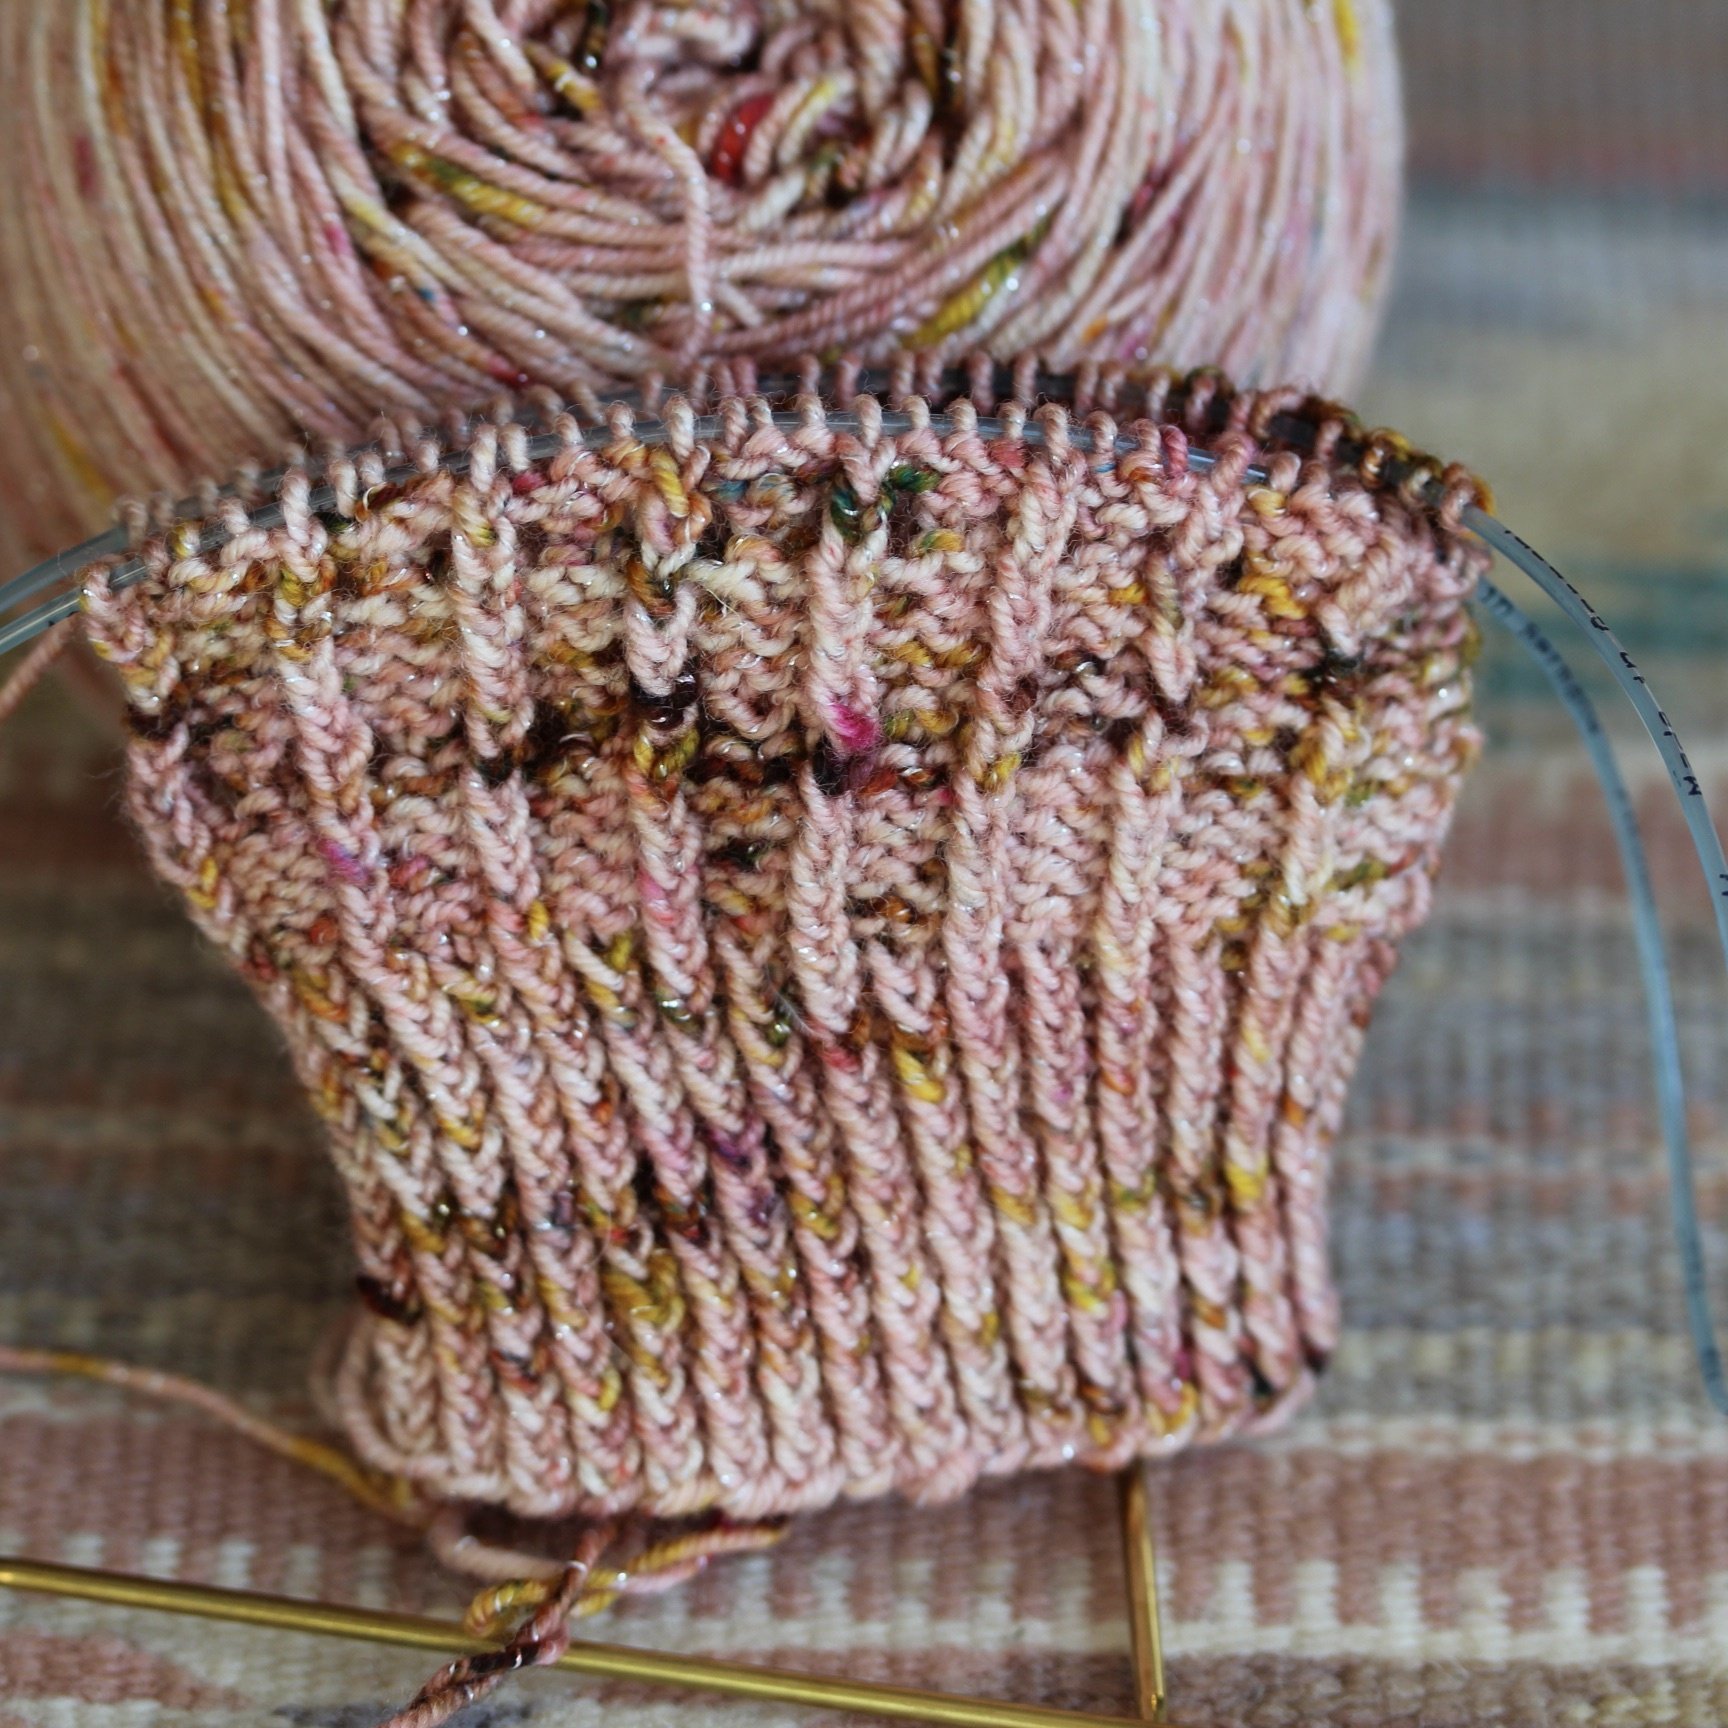 File:Knitting needle size check.jpg - Wikimedia Commons